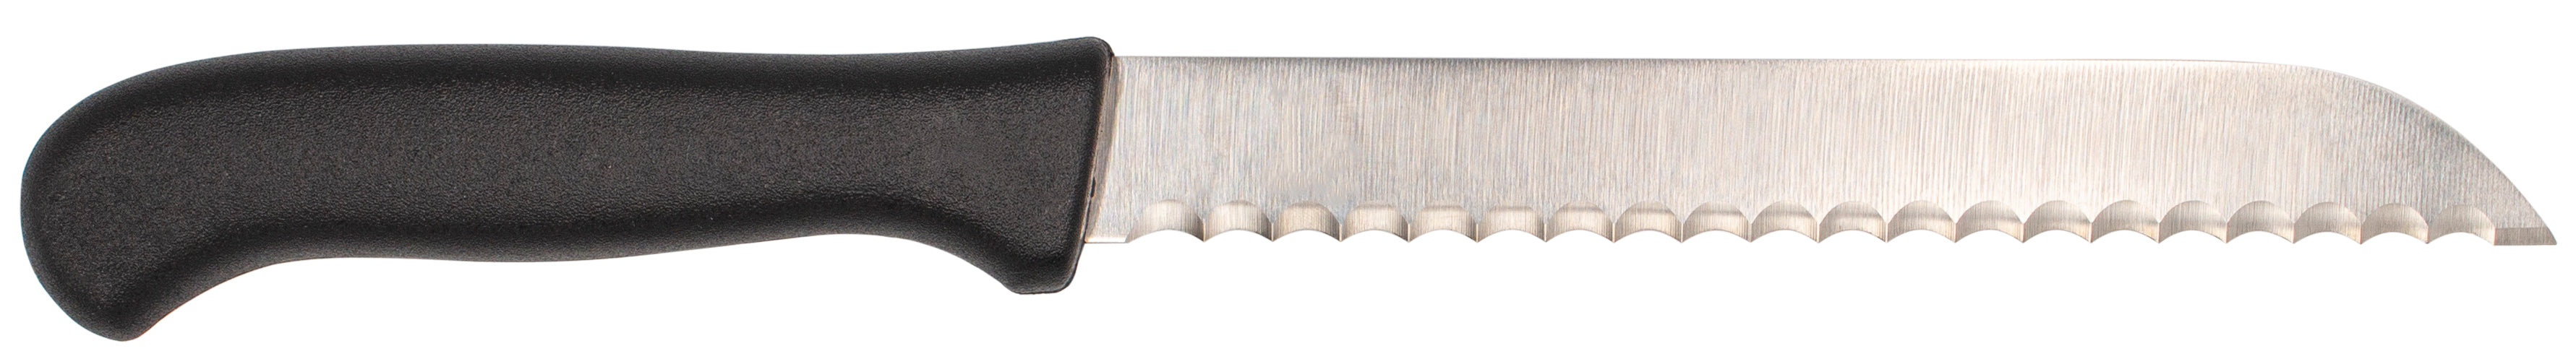 Solinger Brotmesser 17,5cm mit Kunststoffgriff - Rostfrei